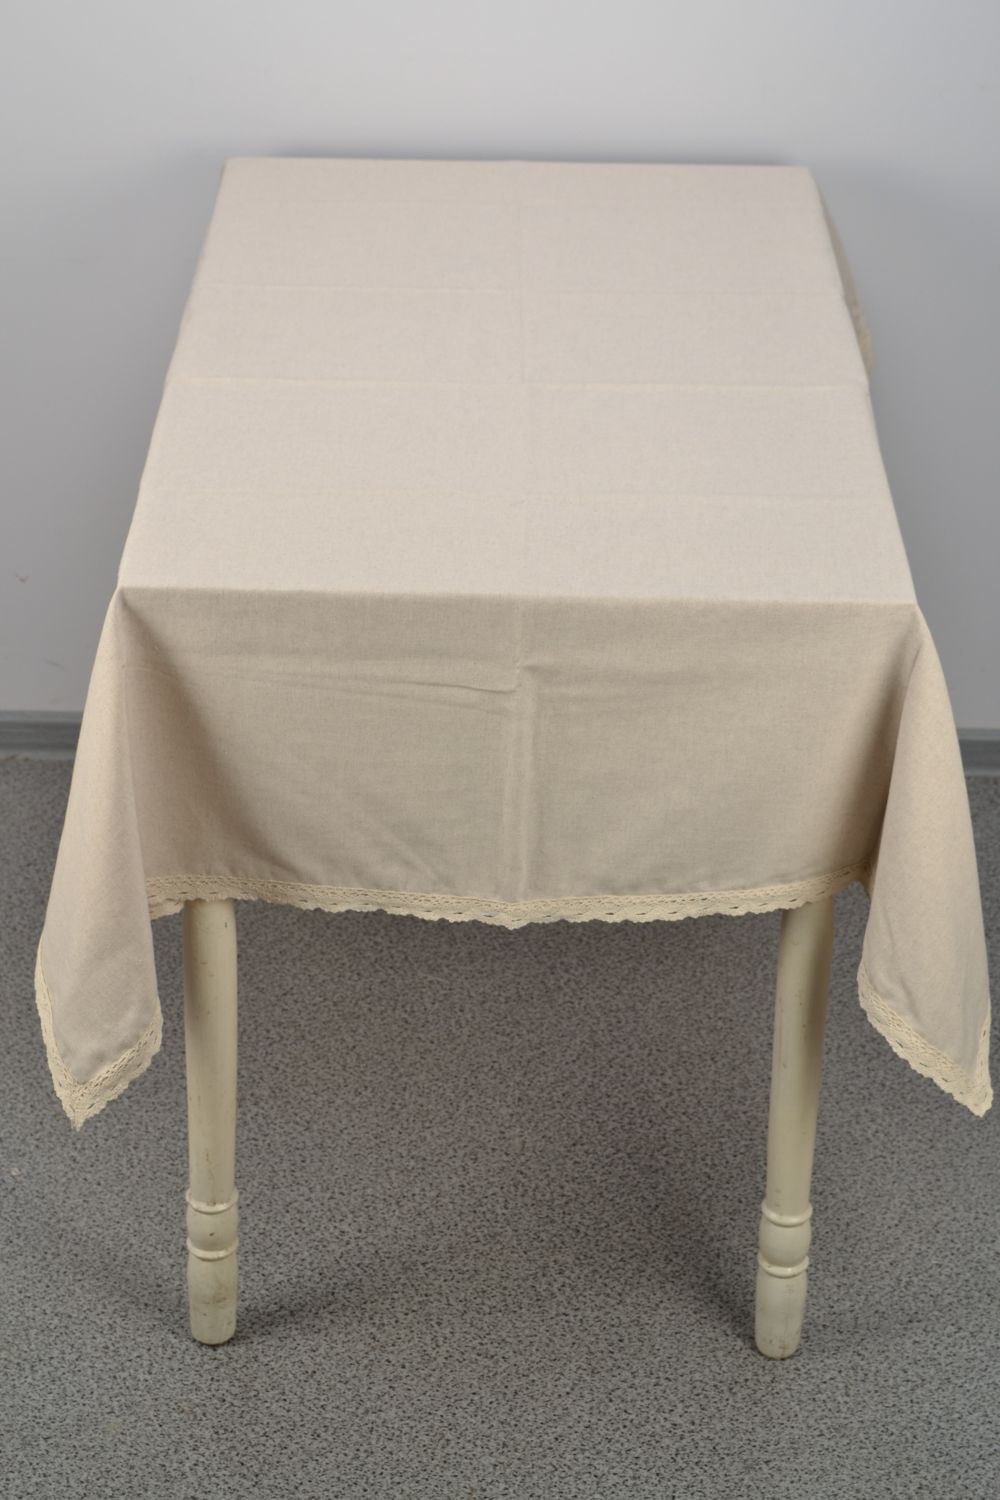 Mantel de mesa rectangular de algodón y poliamida con encaje de color gris foto 2